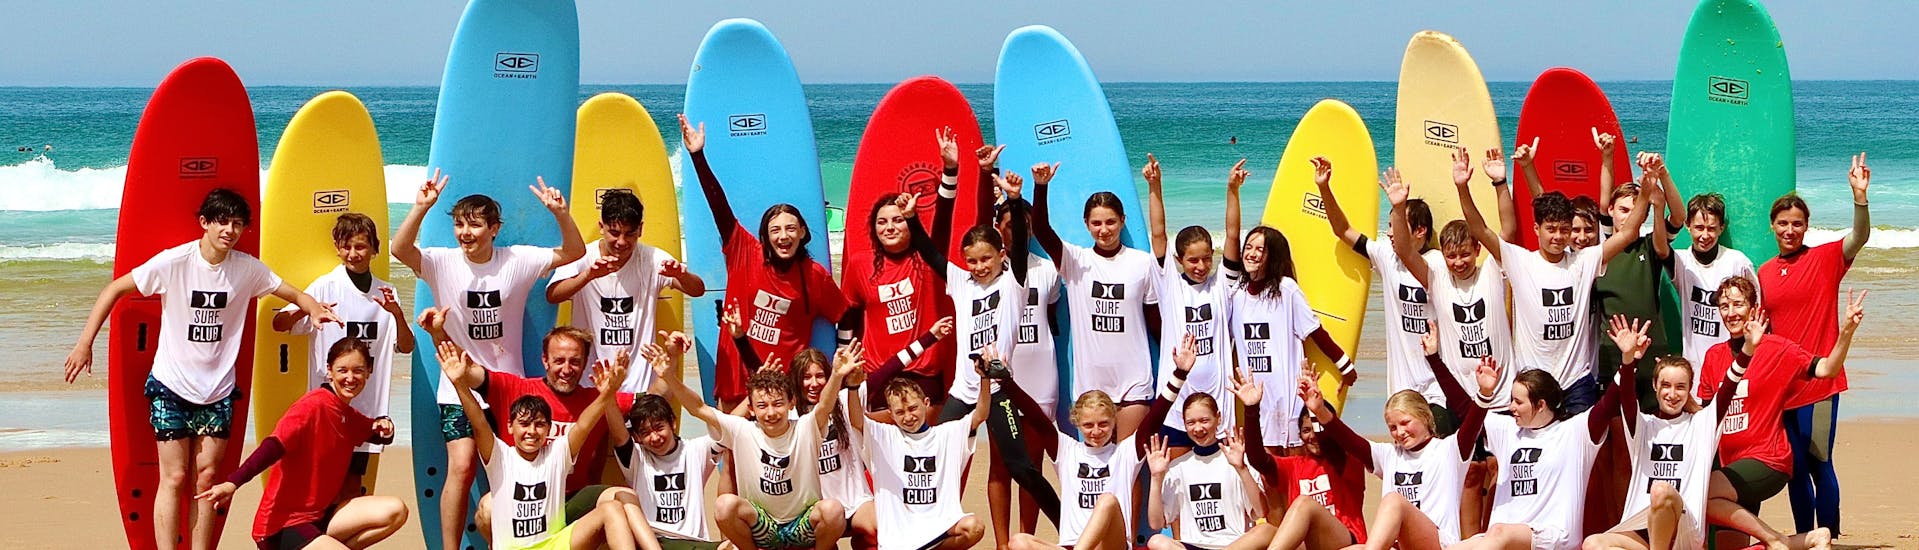 Curso de Surf en Lacanau a partir de 11 años para todos los niveles.